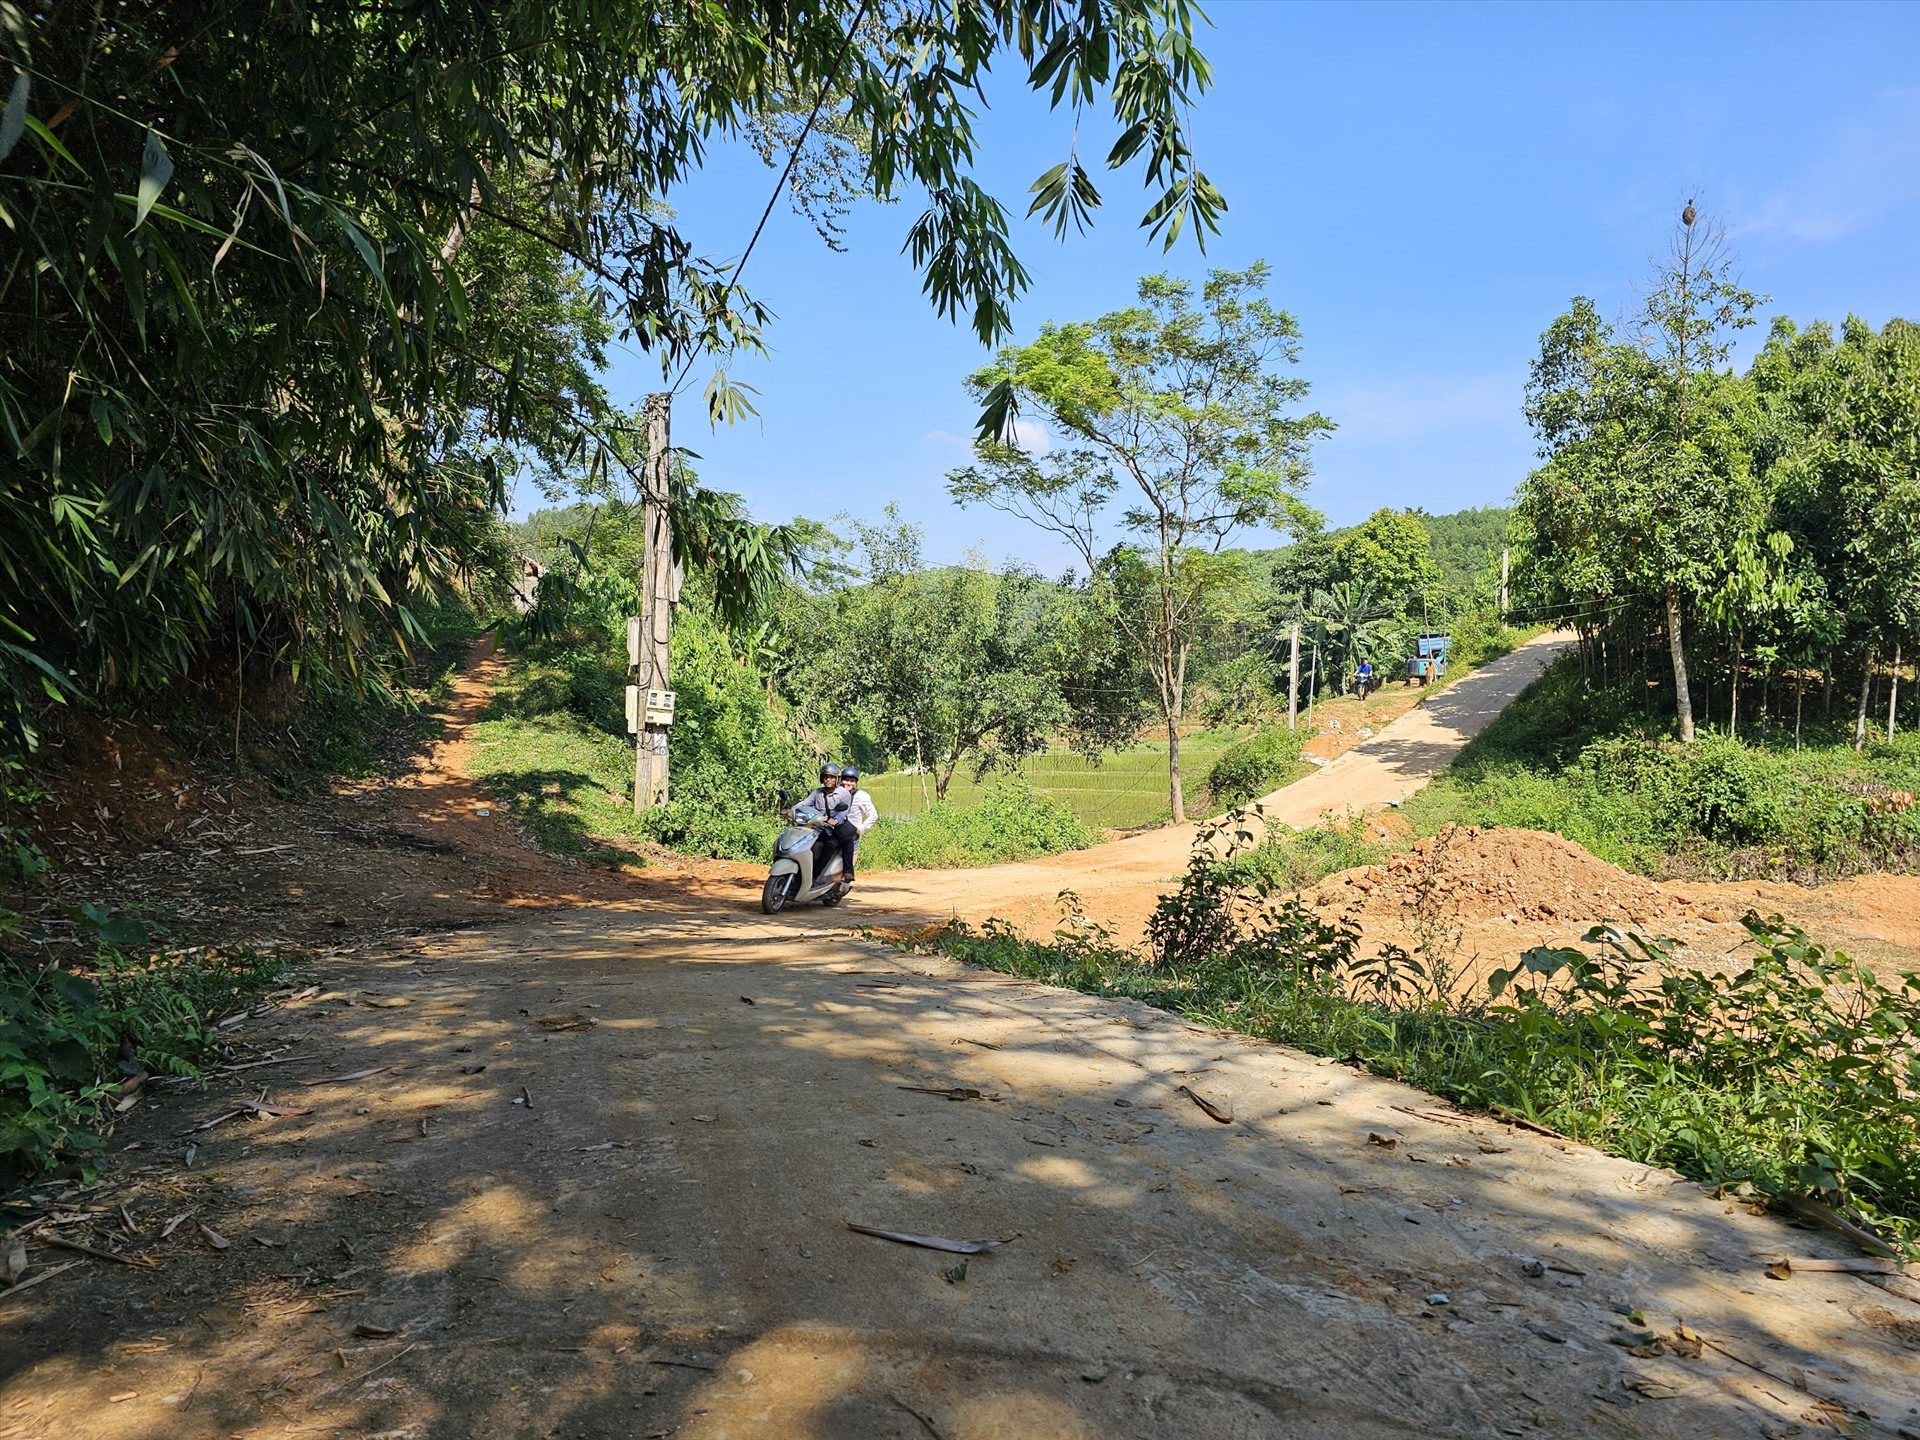 Mỗi nhân khẩu xóm Ngòi Bình, thôn Ngòi Ngần phải đóng 2 triệu đồng để làm đường nông thôn mới dài 1,8km. Ảnh: Bảo Nguyên